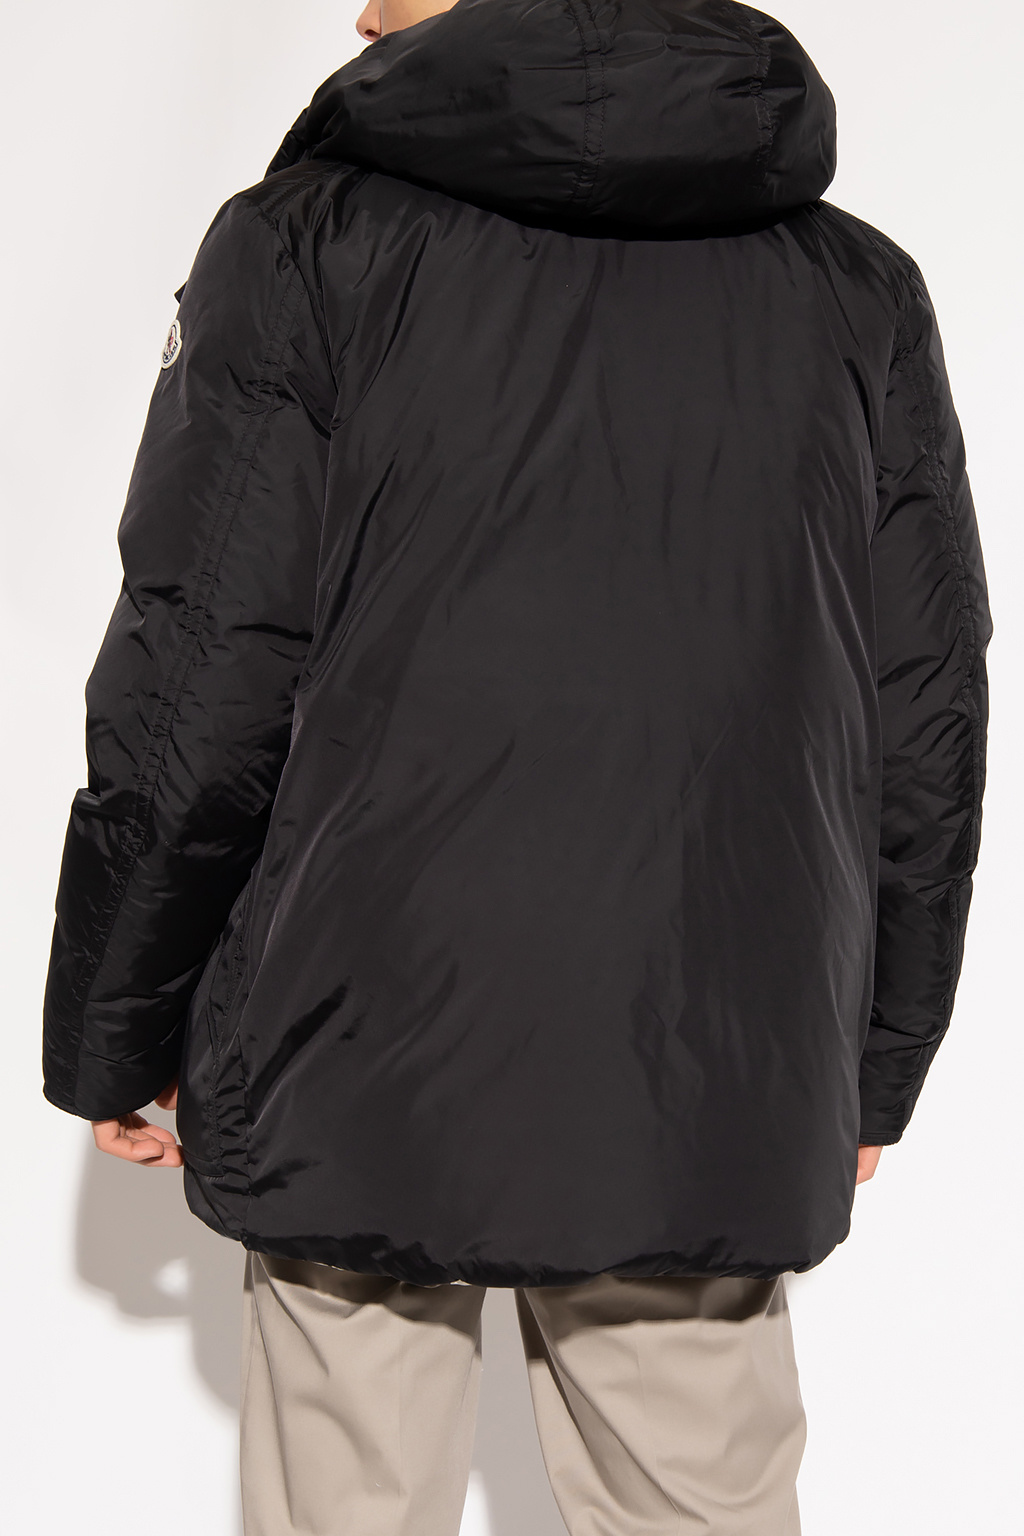 Moncler ‘Hordelyme’ reversible jacket